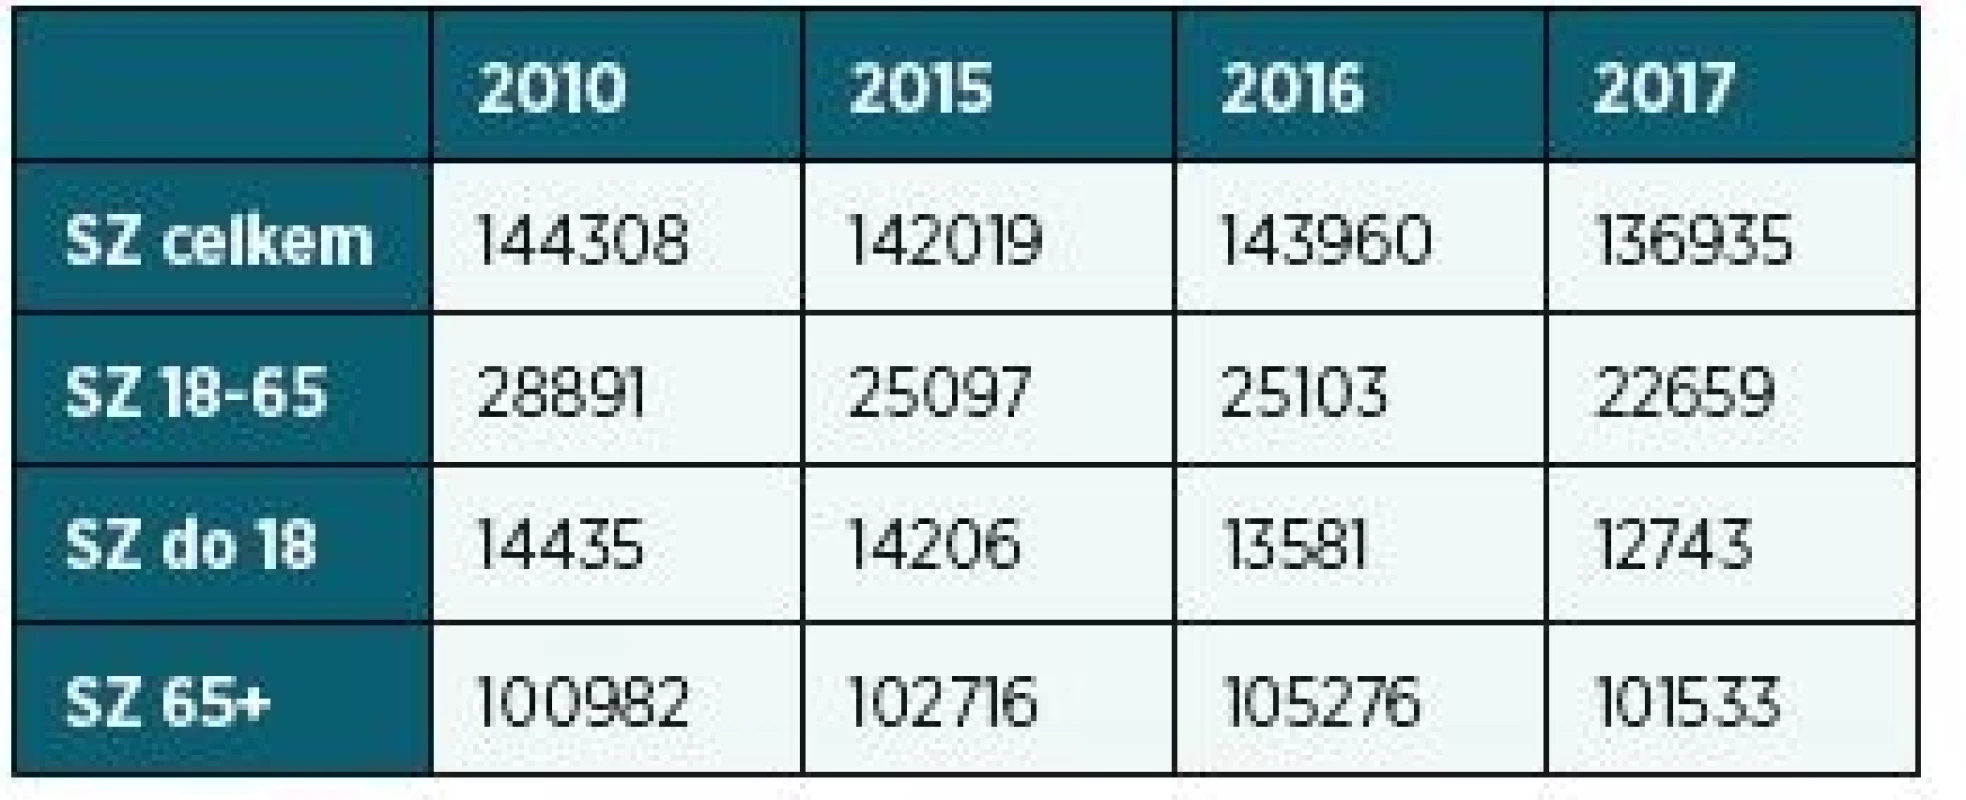 Počty všech posouzených podle věkových skupin, 2010,
2015, 2016, 2017